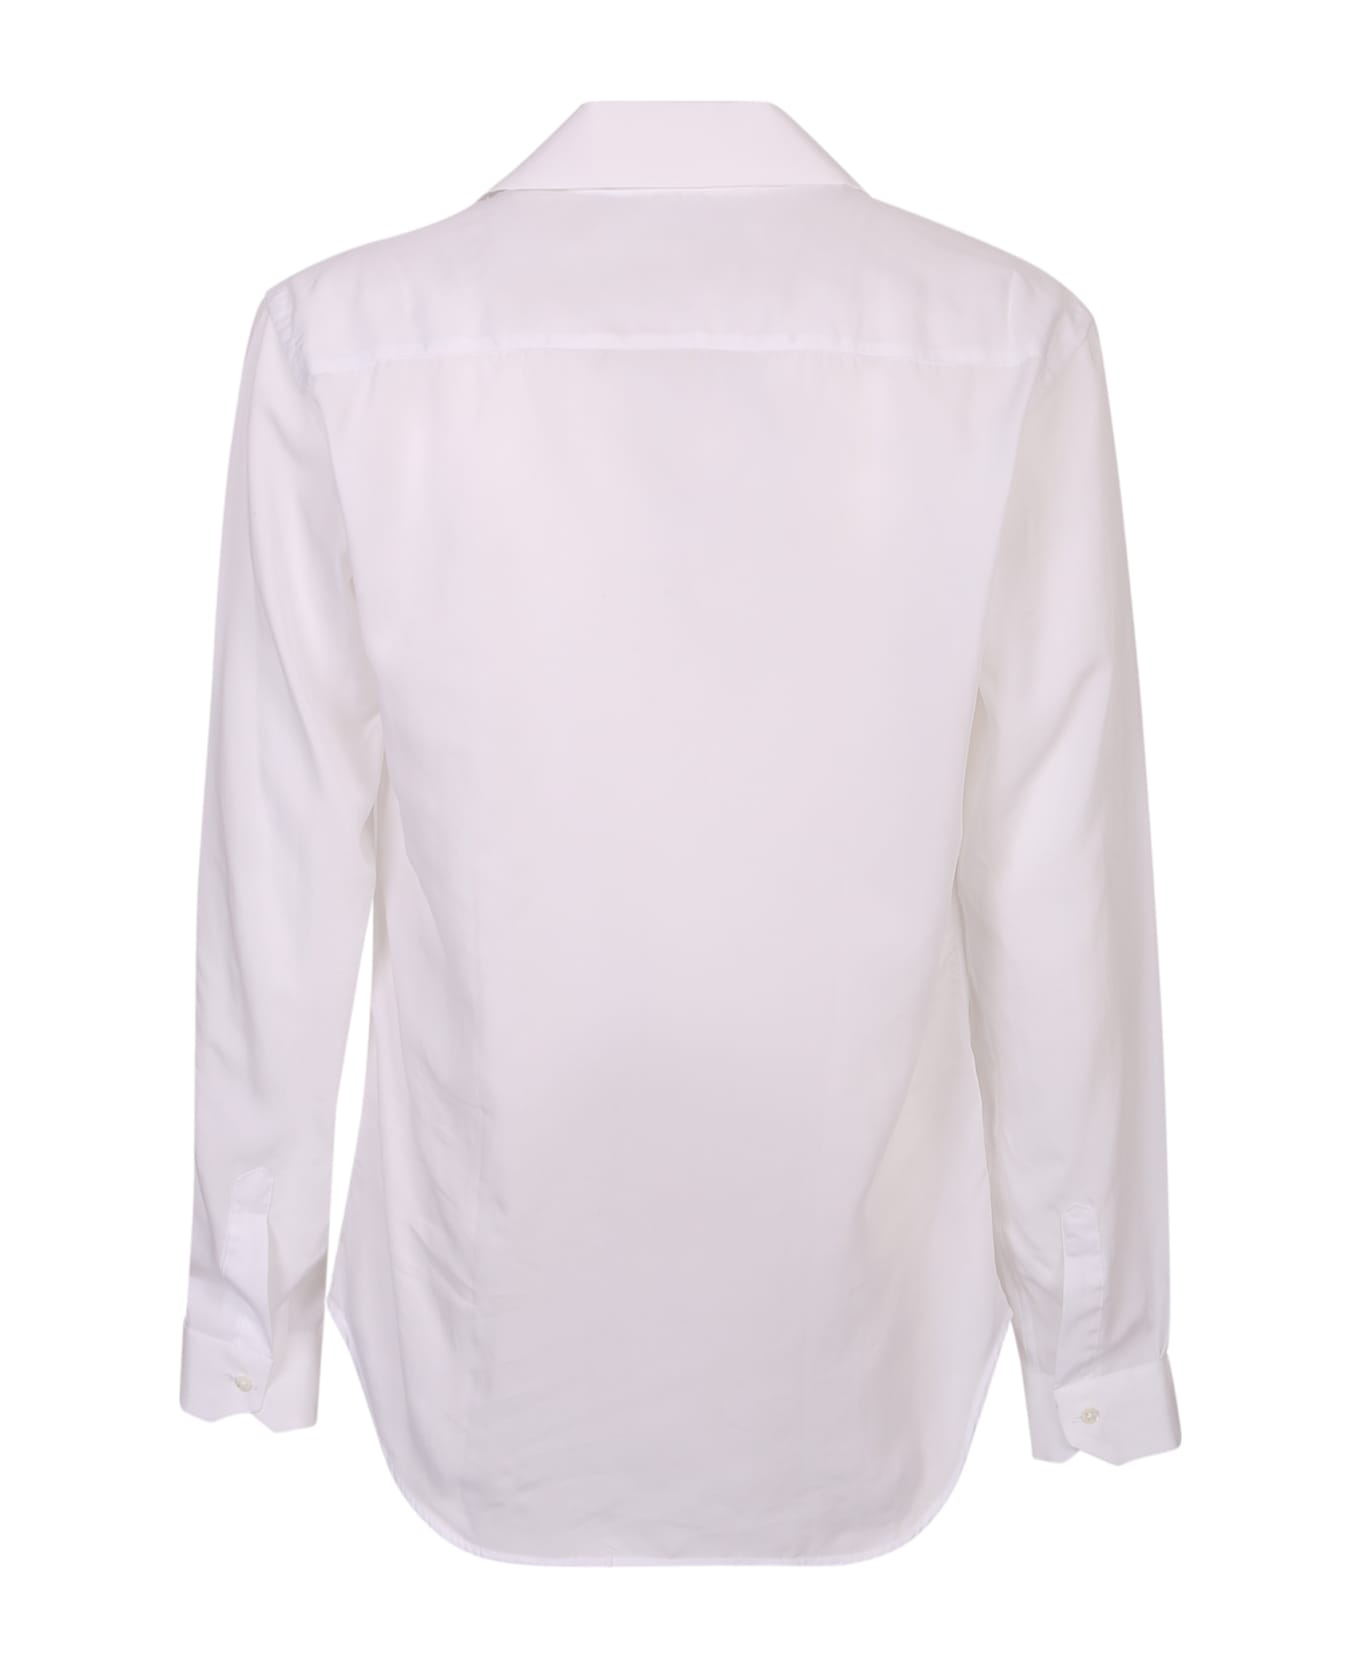 costumein Classic Shirt - White